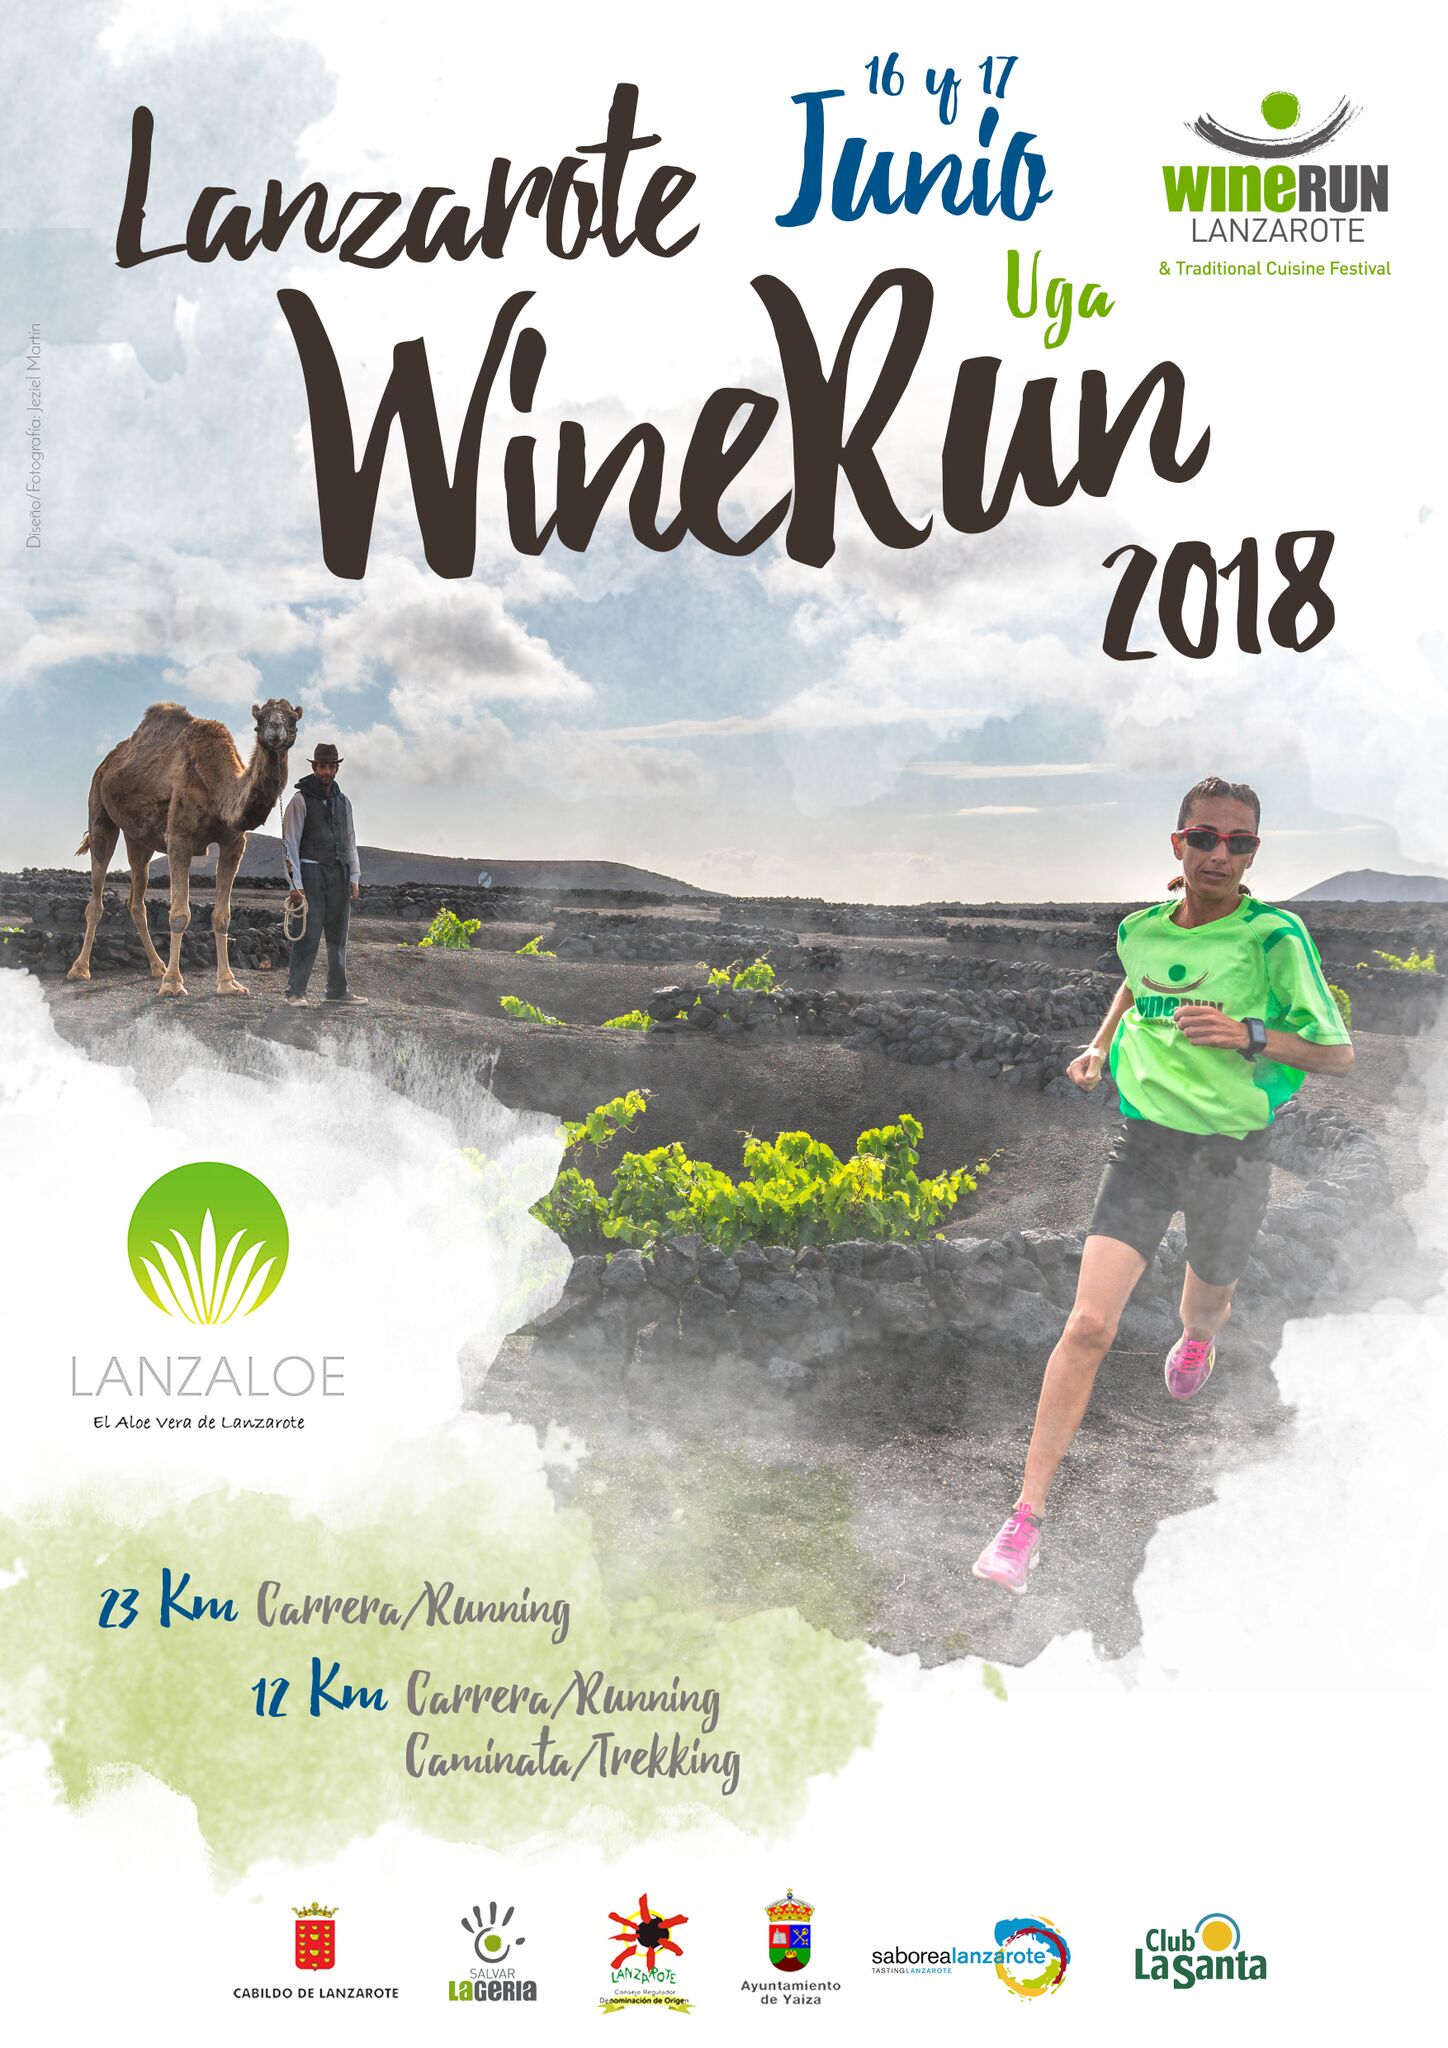 Lanzaloe será uno de los patrocinadores de la carrera Wine Run Lanzarote